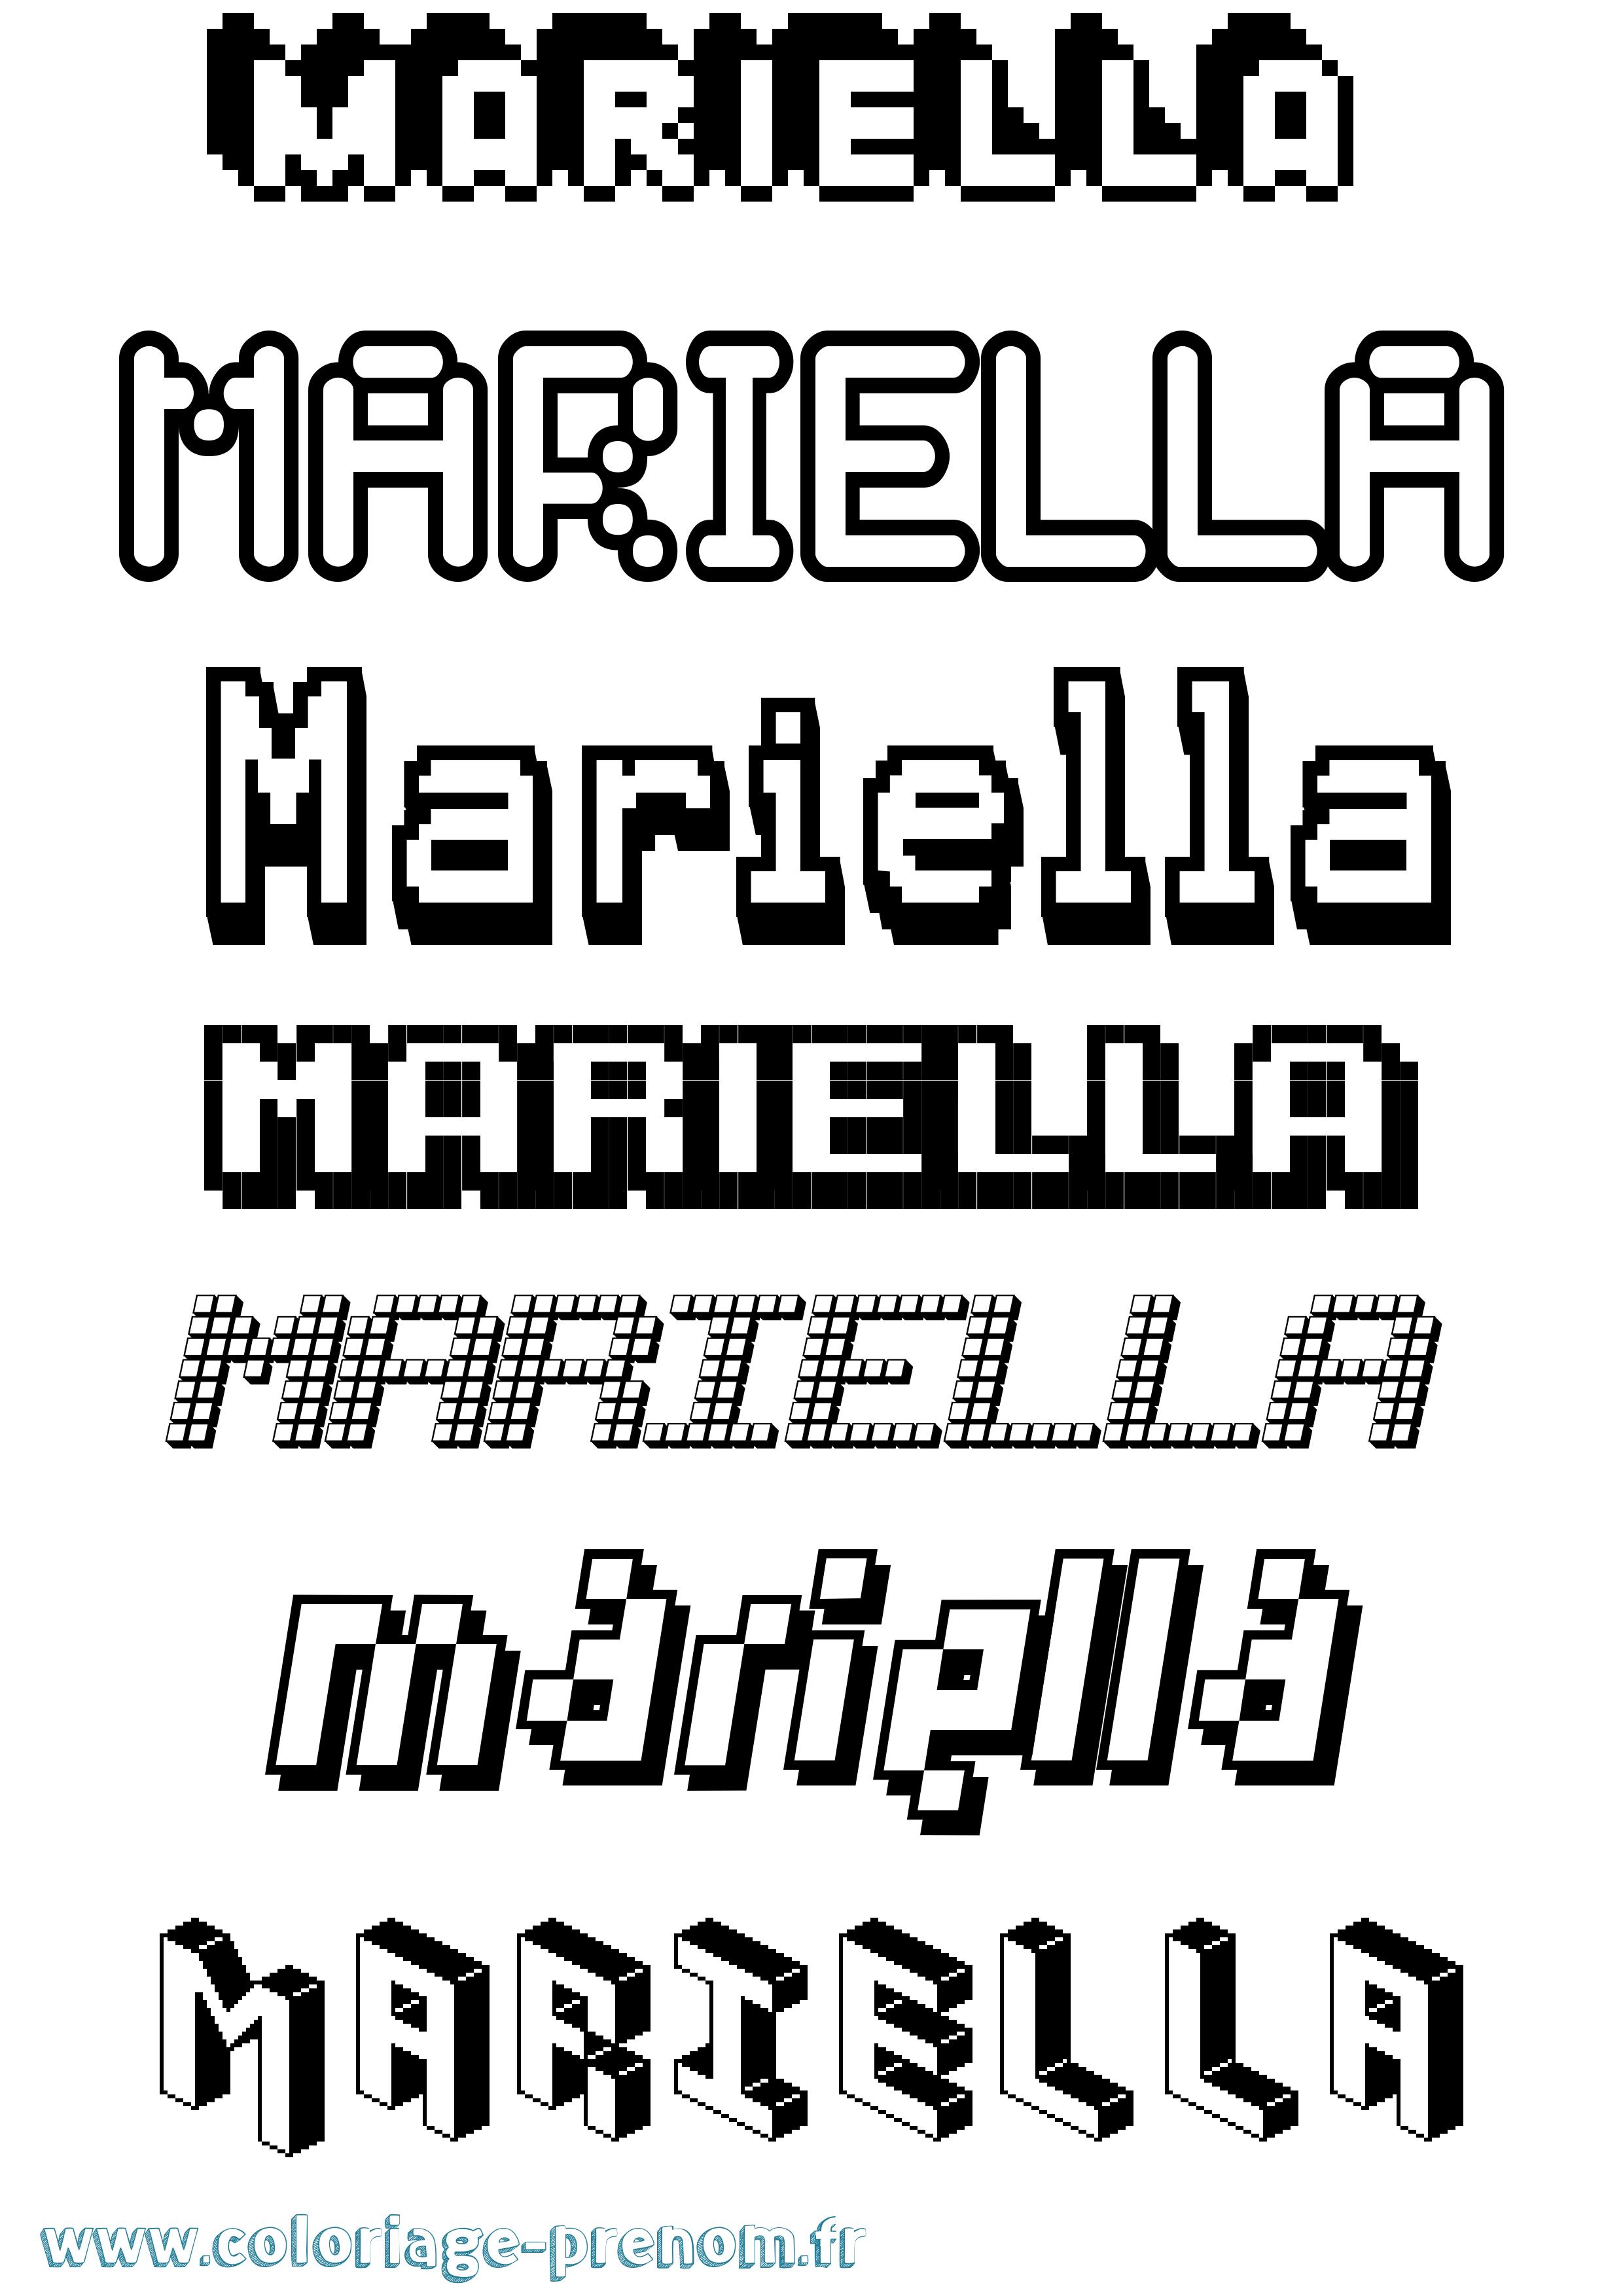 Coloriage prénom Mariella Pixel